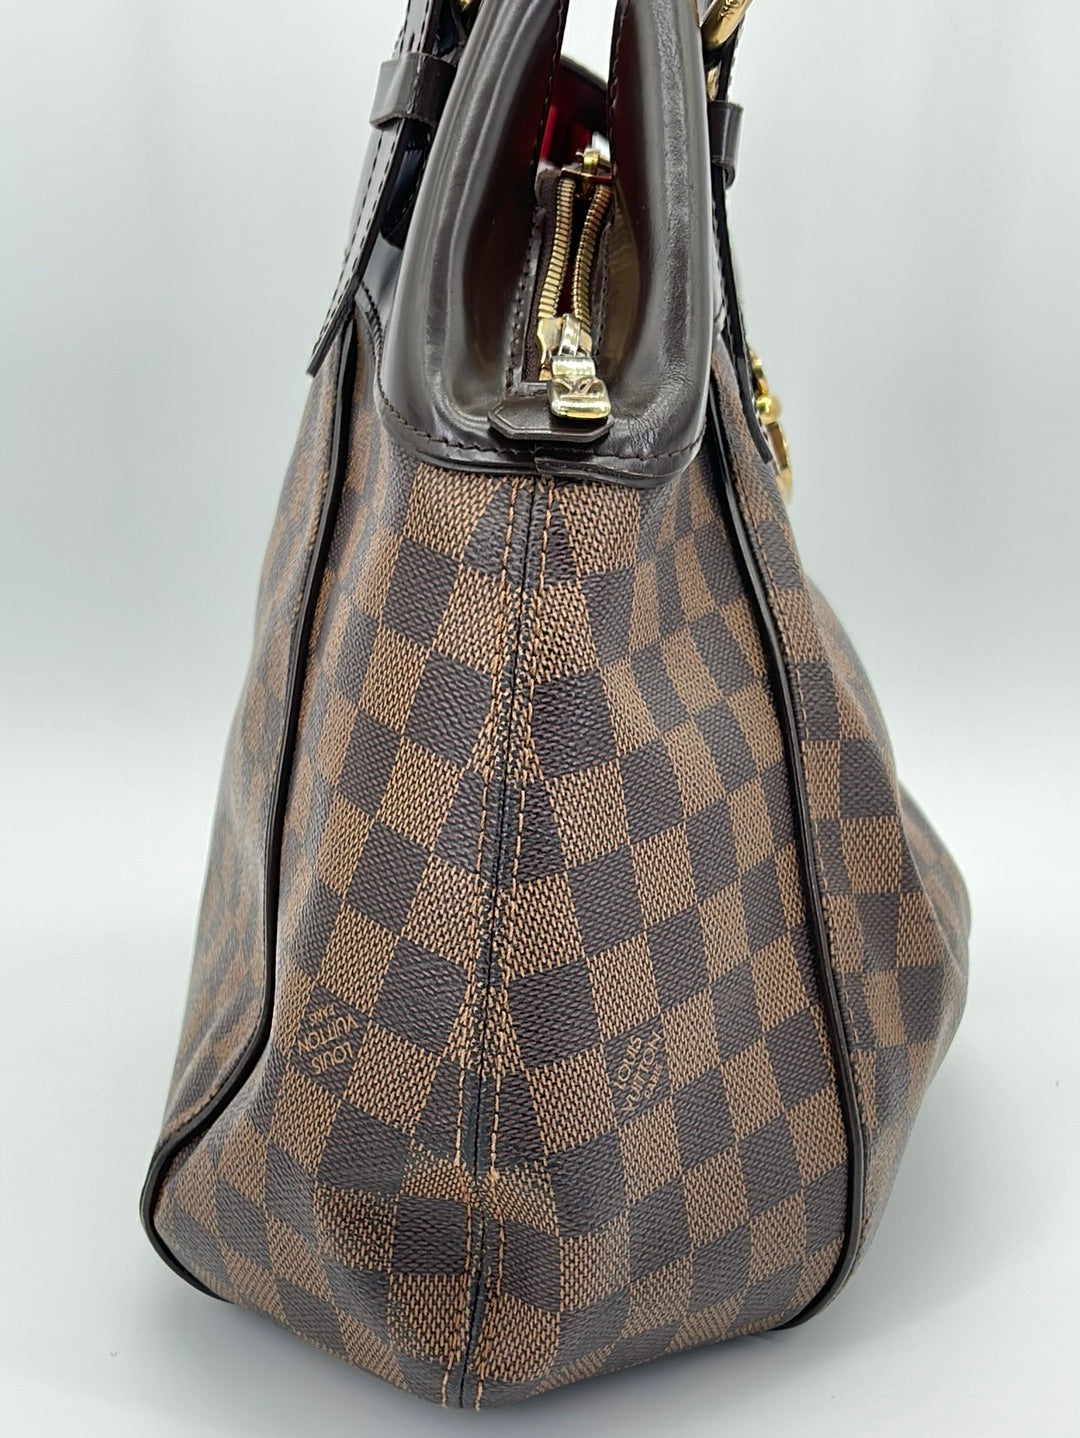 Gorgeous Authentic Vintage Louis Vuitton Damier Ebene Sistina GM Large Bag